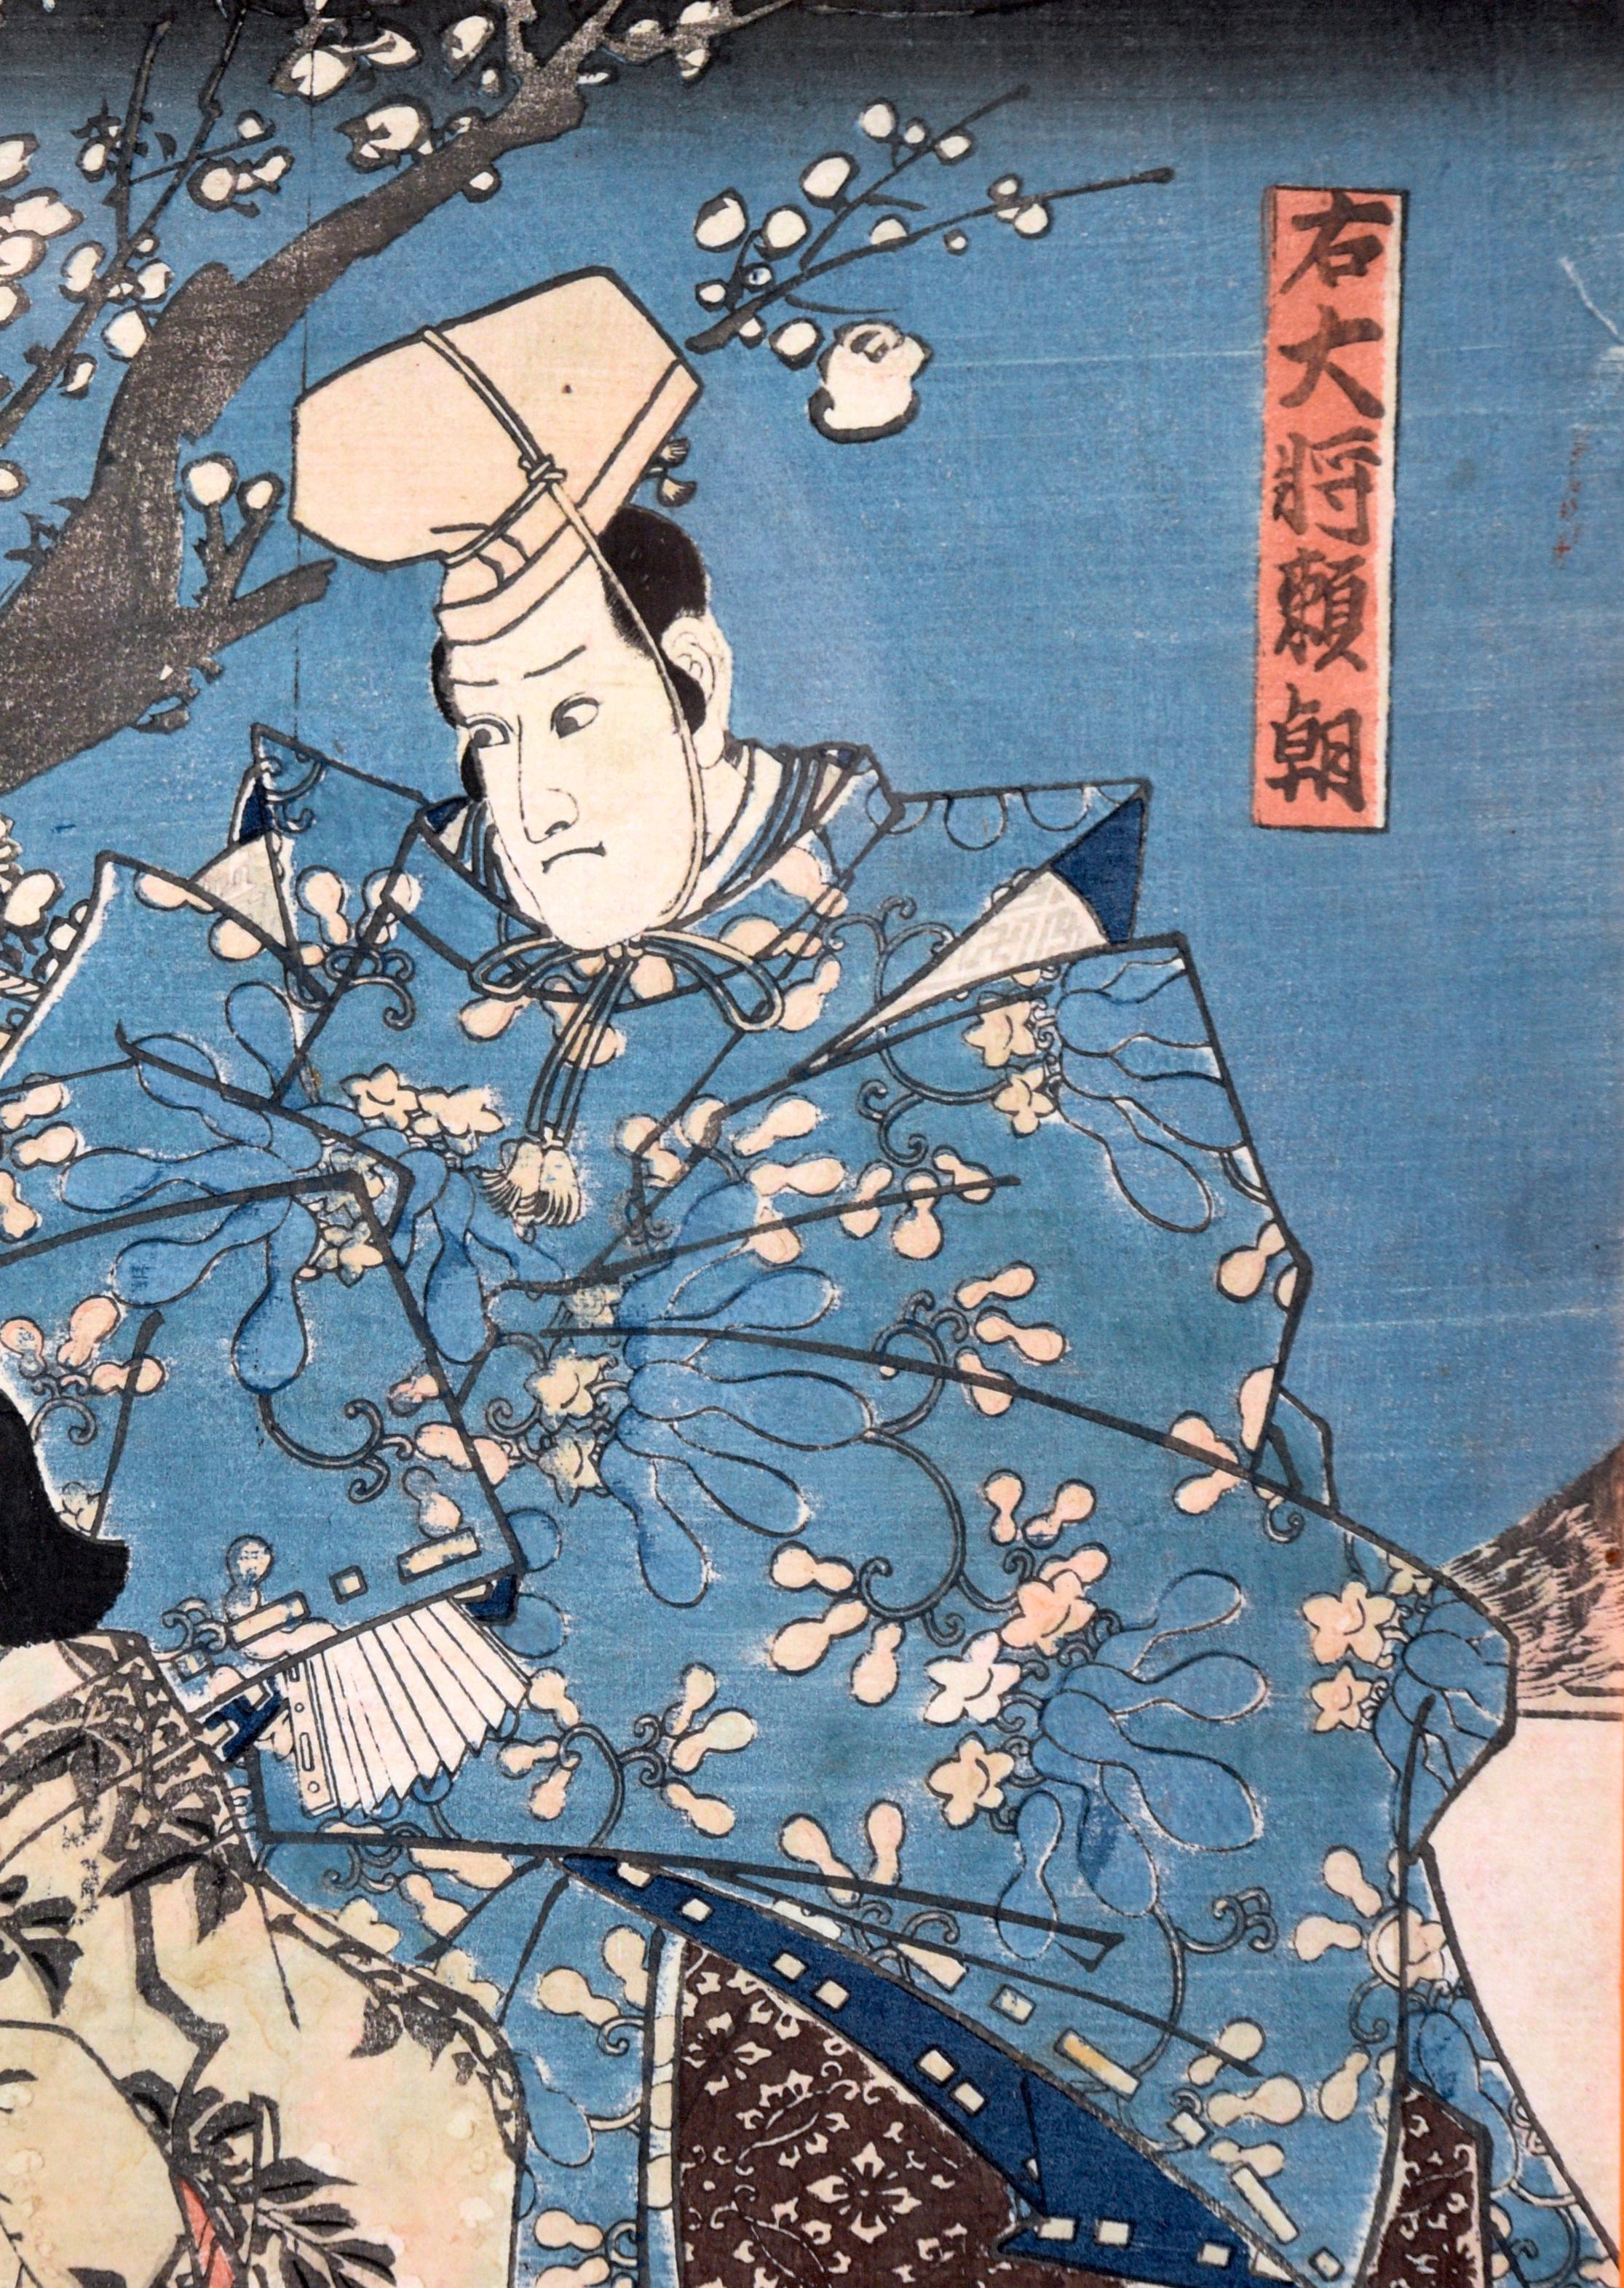 Two Actors - Japanese Woodblock by Chikanobu Yoshu - Edo Print by Toyohara Chikanobu